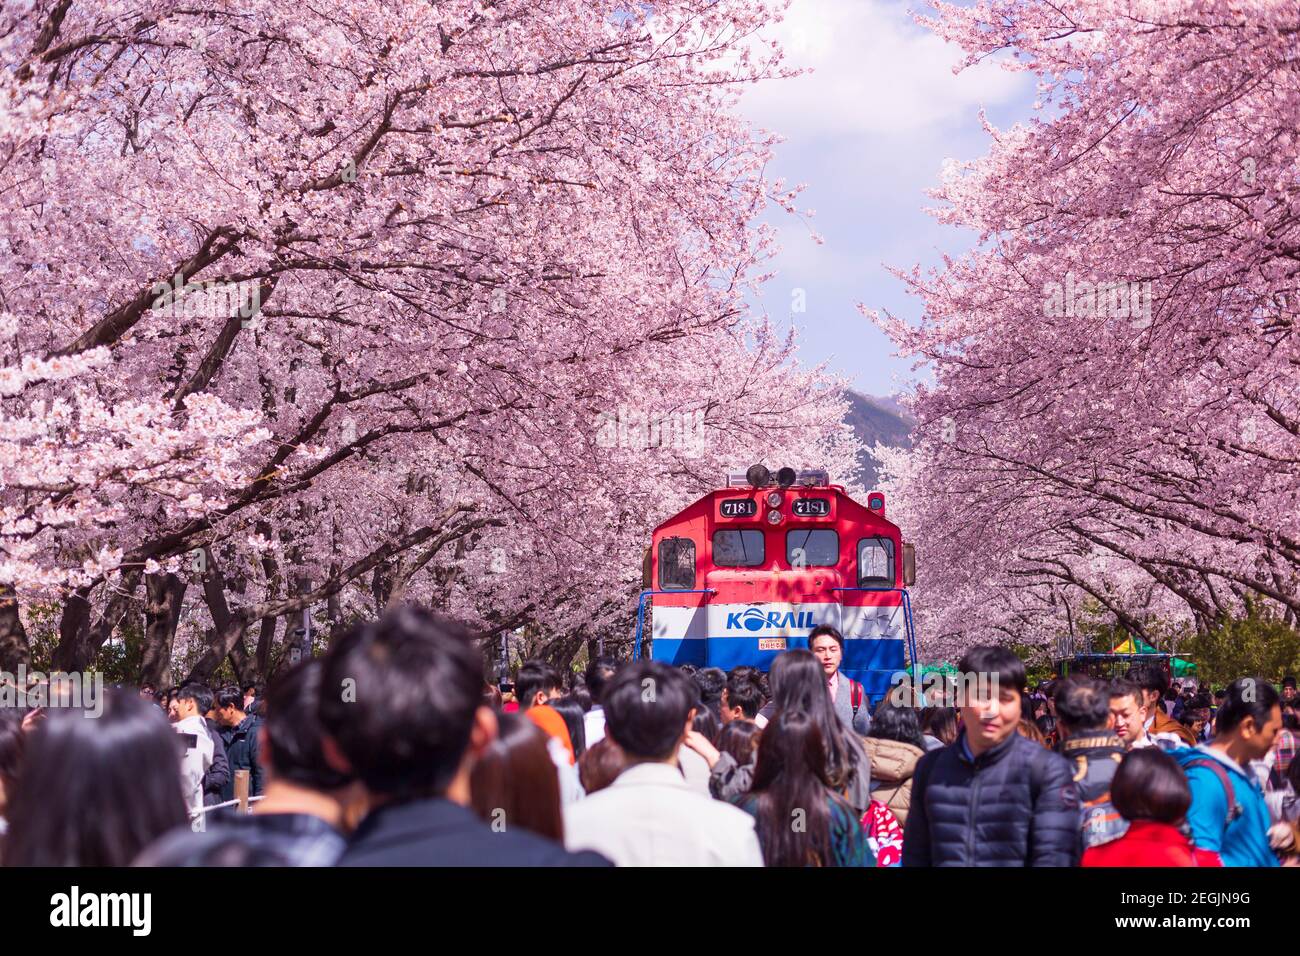 JINHAE, CORÉE DU SUD - MARS 30,2019: Cerisiers en fleurs avec train au printemps en Corée est le lieu populaire d'observation des cerisiers en fleurs, jinhae Corée du Sud. Banque D'Images